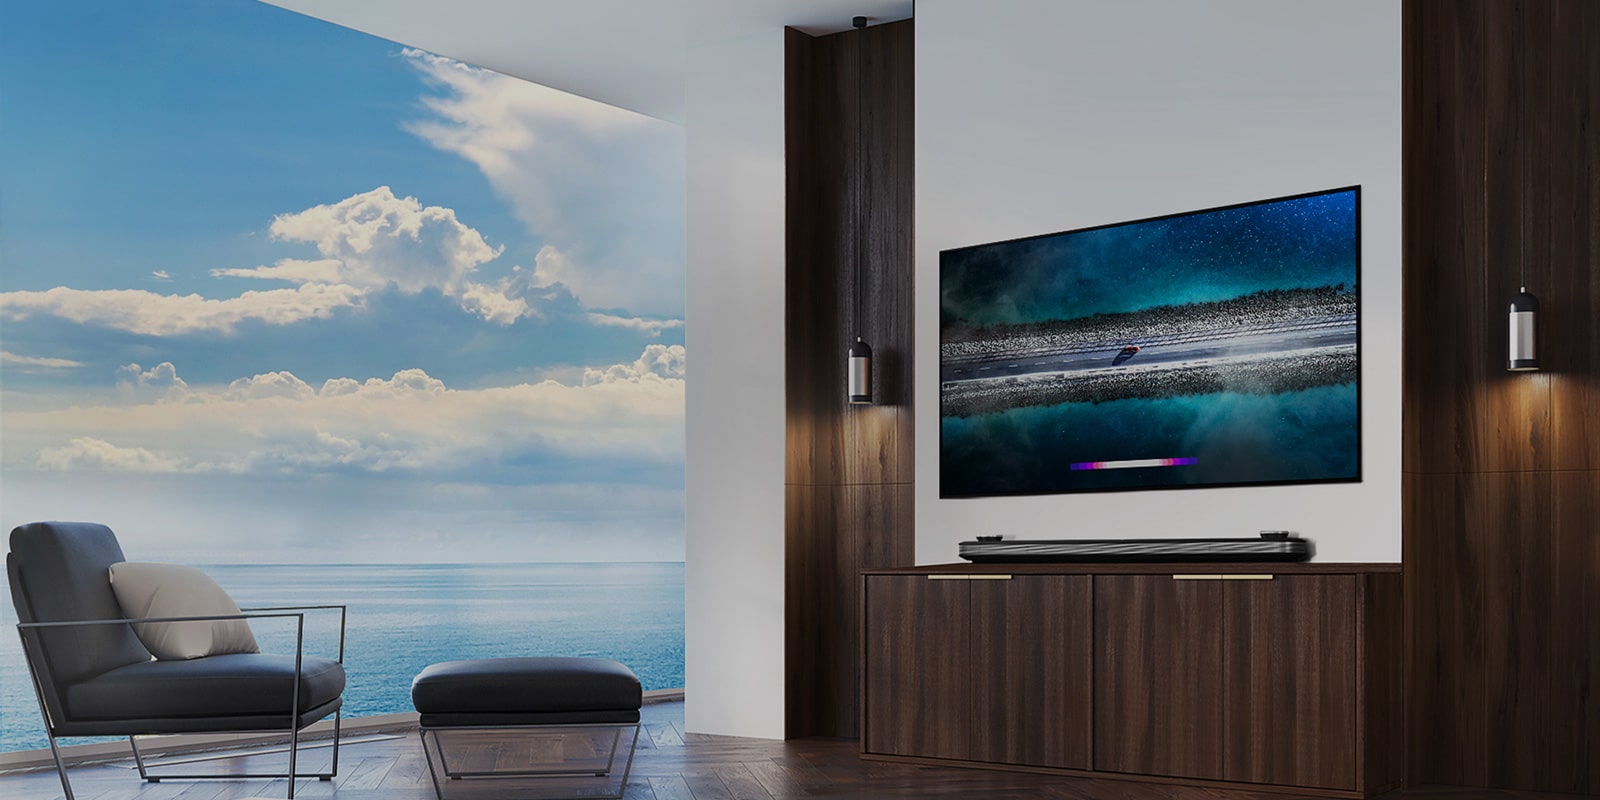 LG SIGNATURE OLED TV W9 este atârnat pe perete și o canapea este așezată chiar în fața televizorului, cu cerul albastru de pe fereastră.